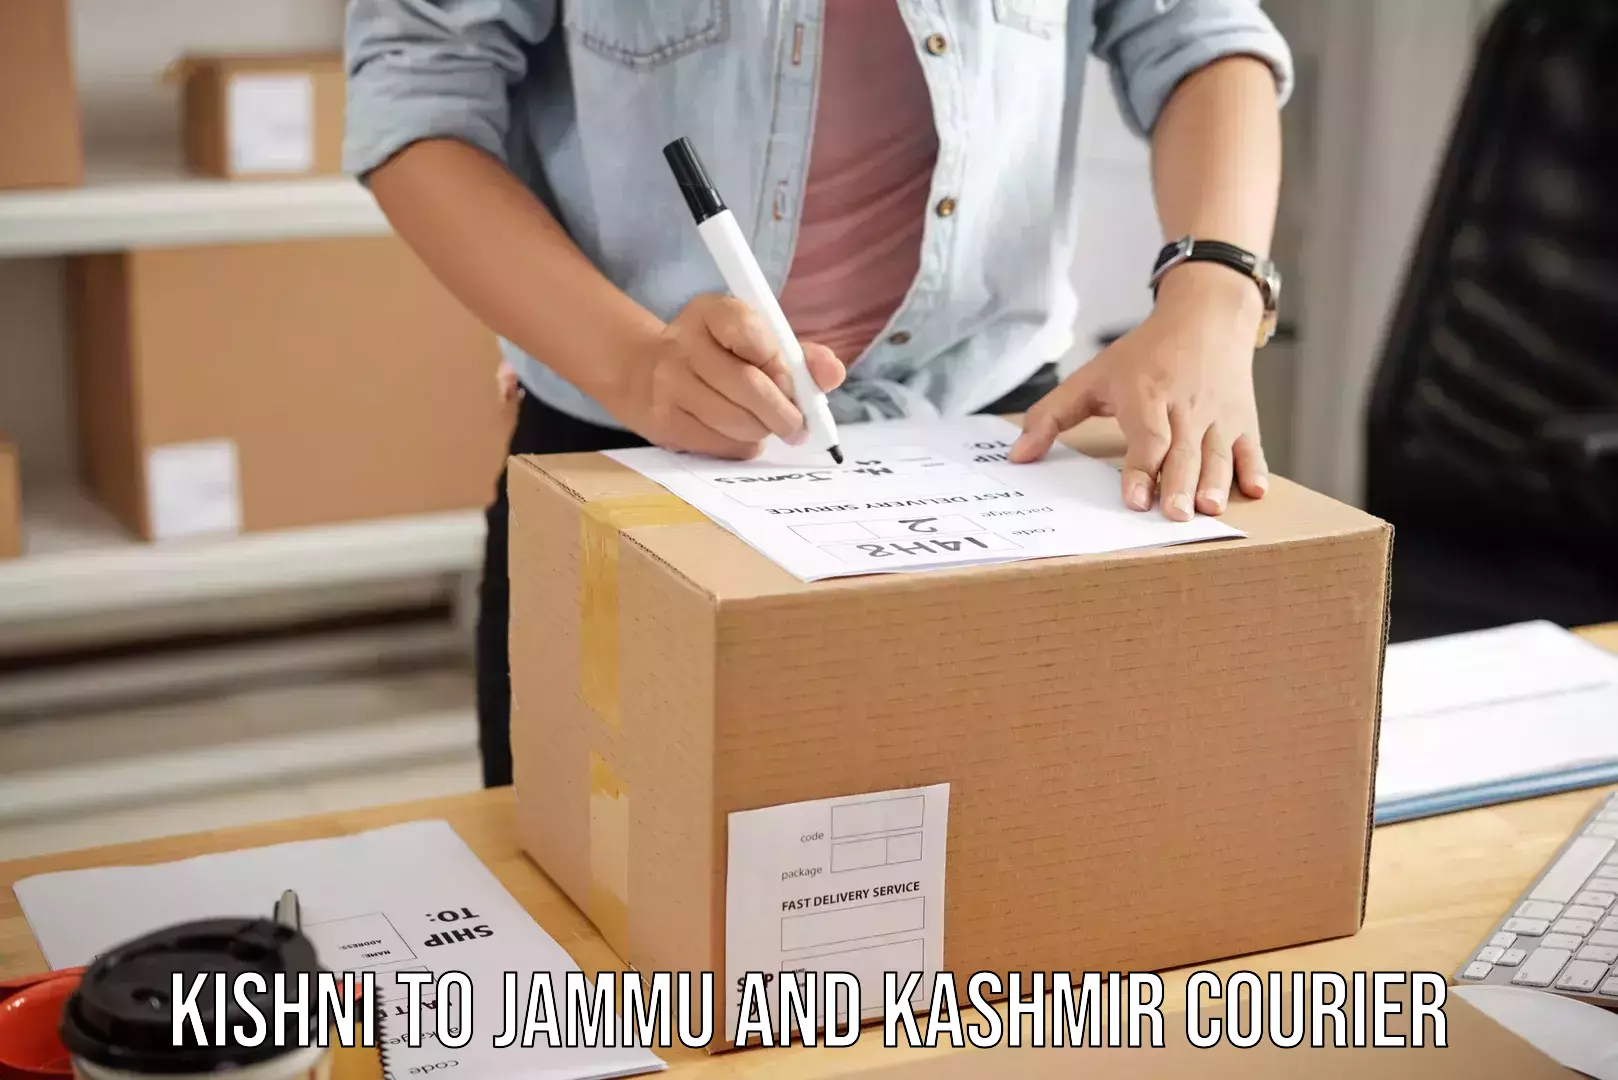 Luggage delivery network Kishni to Samba